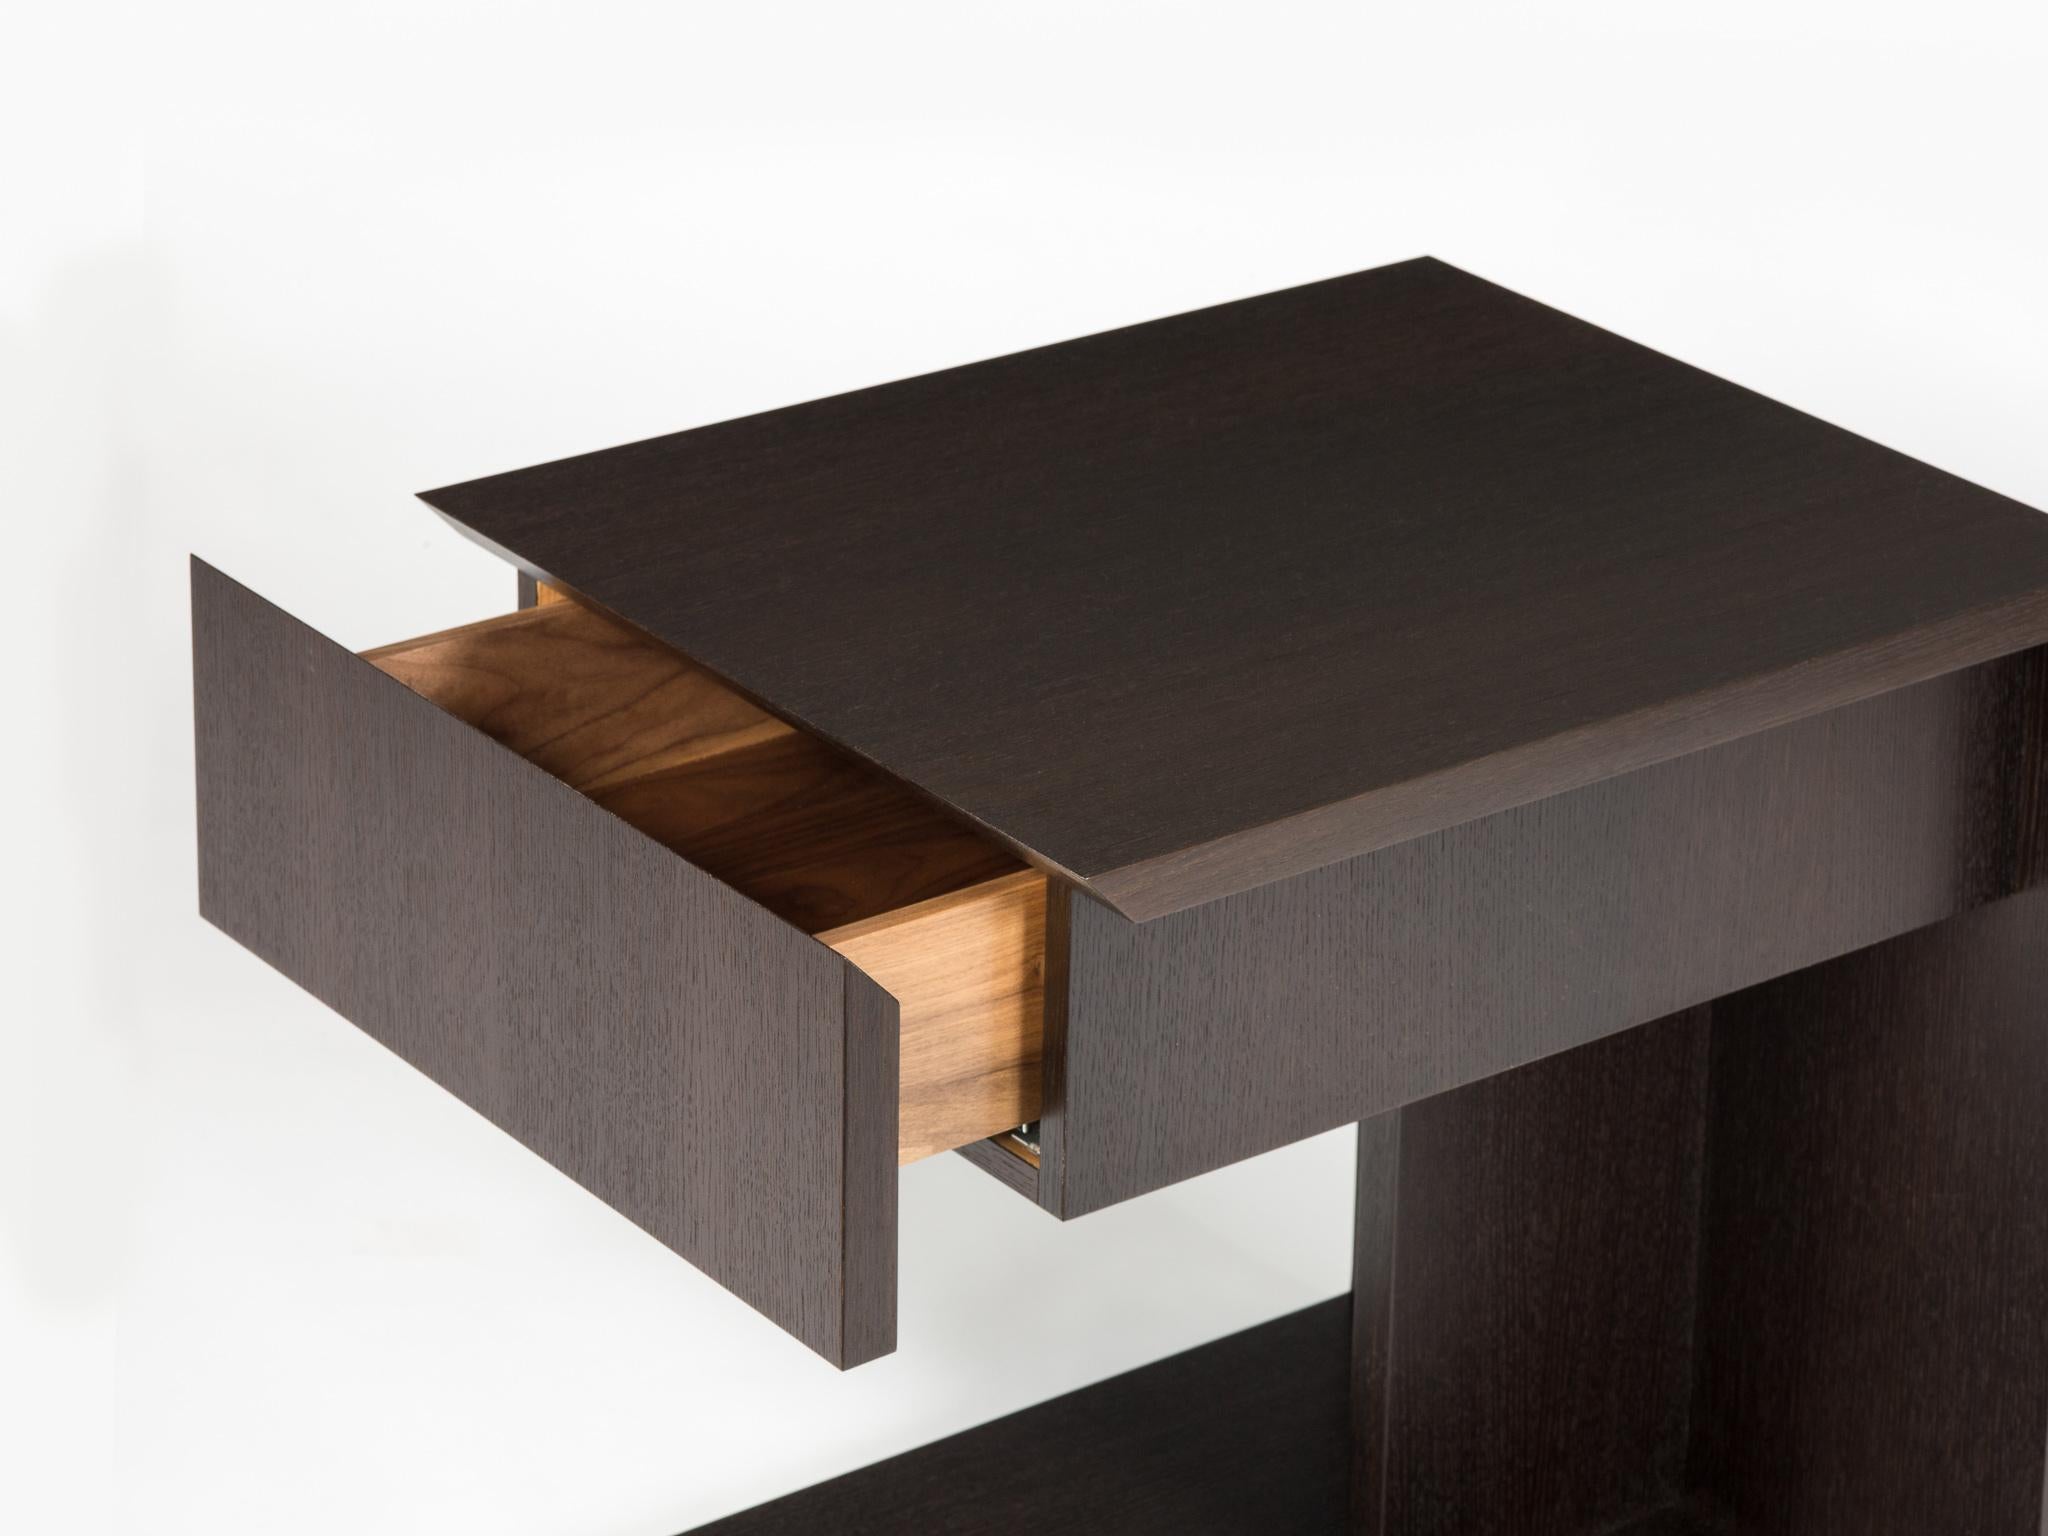 Cette version de notre table d'appoint moderne en bois s'appelle la table 